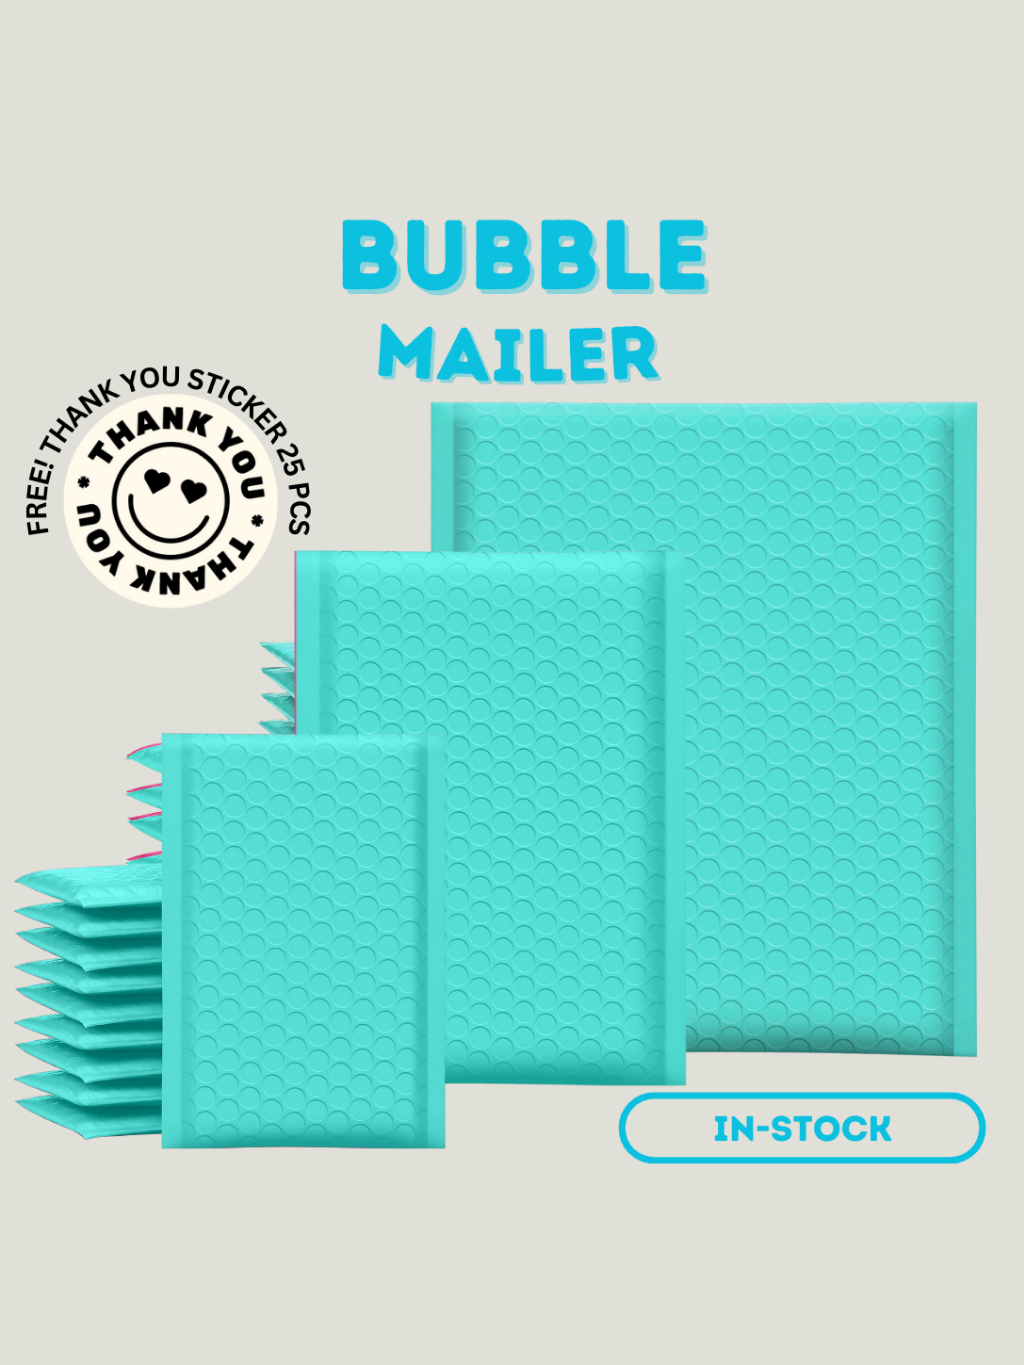 กรอกโค้ด-vy8xbu7d-ลด-65-50ซอง-แพค-size-12x18cm-ซองบับเบิ้ล-มากกว่า-10สี-ซองกันกระแทก-bubble-mailer